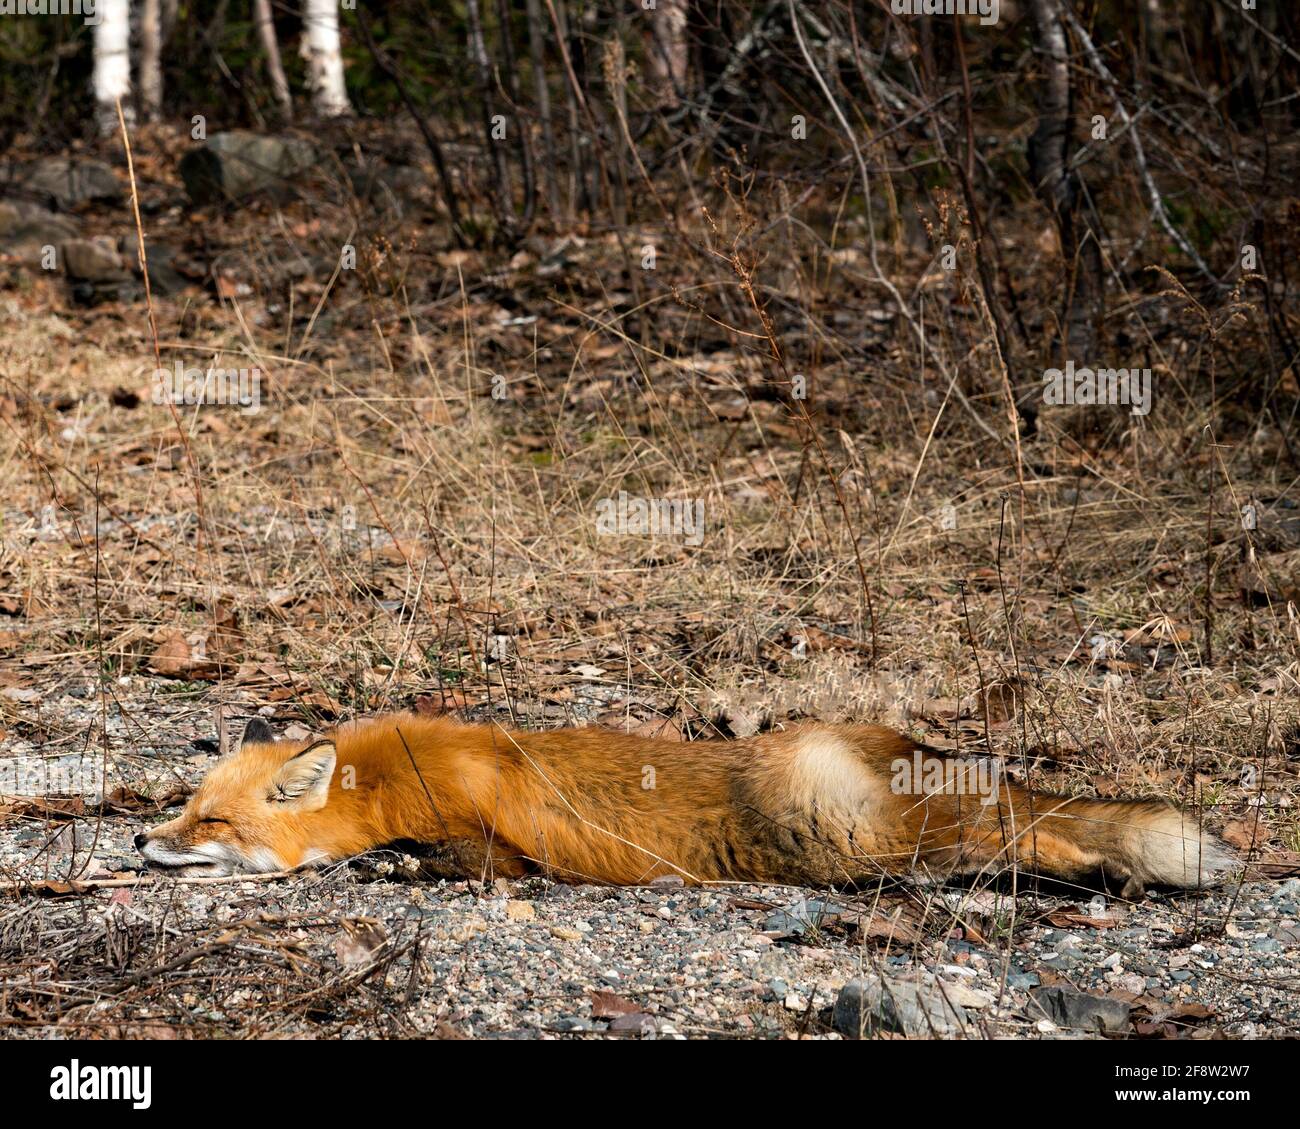 Profilo di primo piano Red Fox che si snooze nella stagione primaverile con sfondo di foresta sfocata nel suo ambiente e habitat. Immagine FOX. Immagine. Verticale Foto Stock